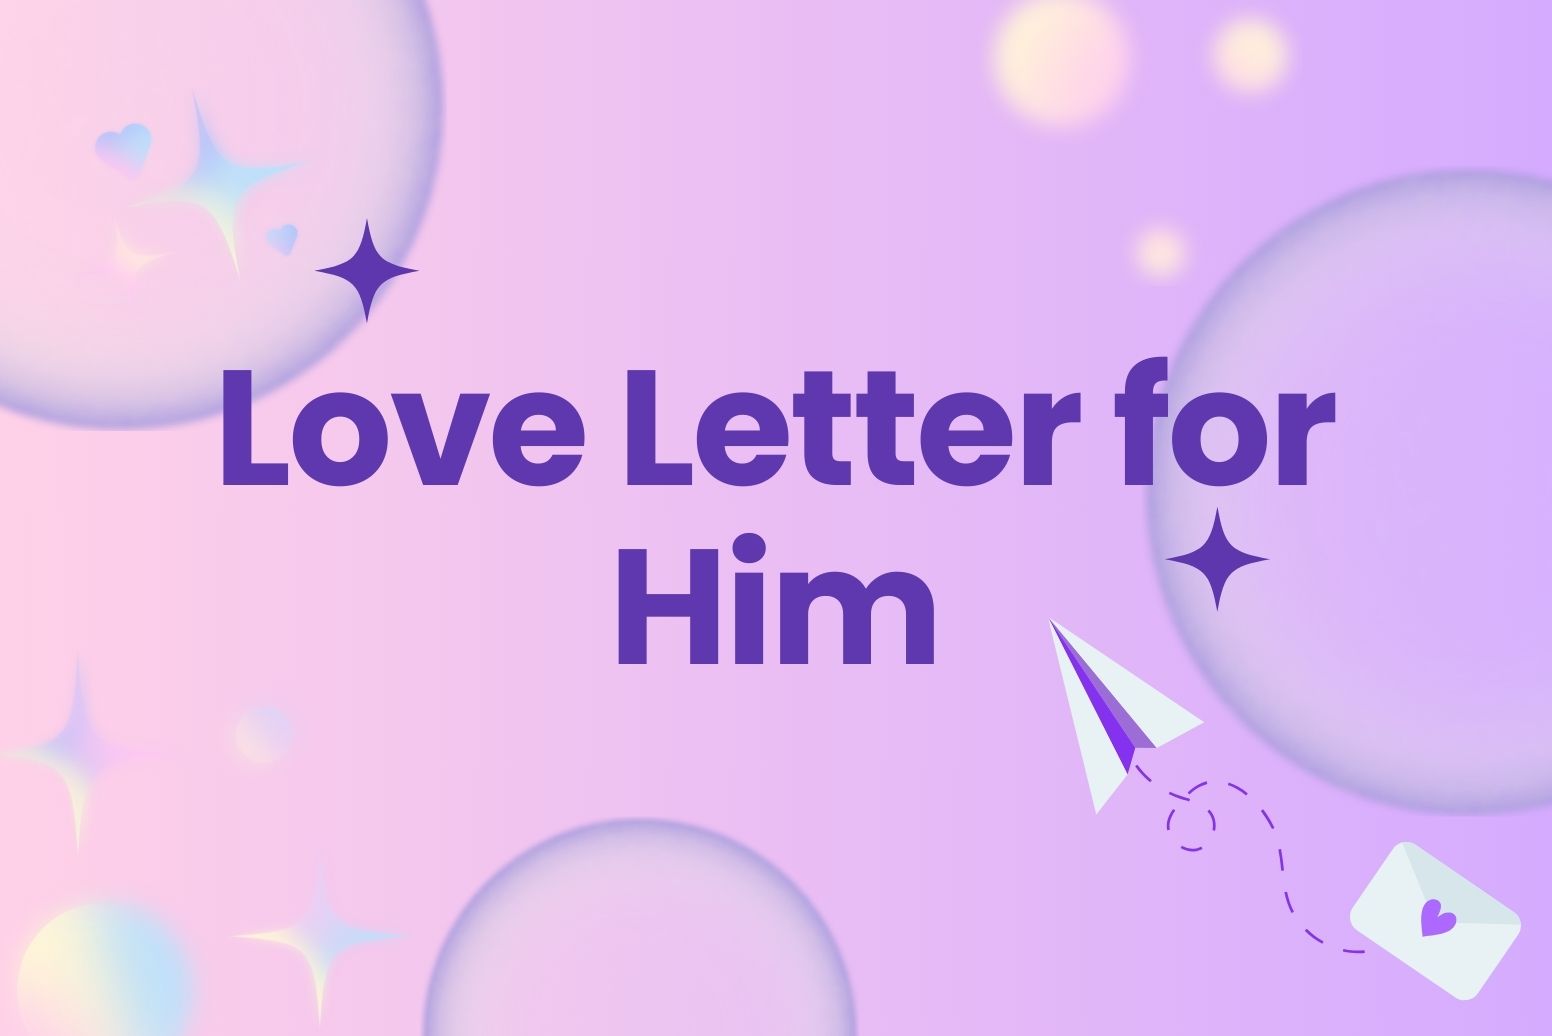 Love Letter for Him